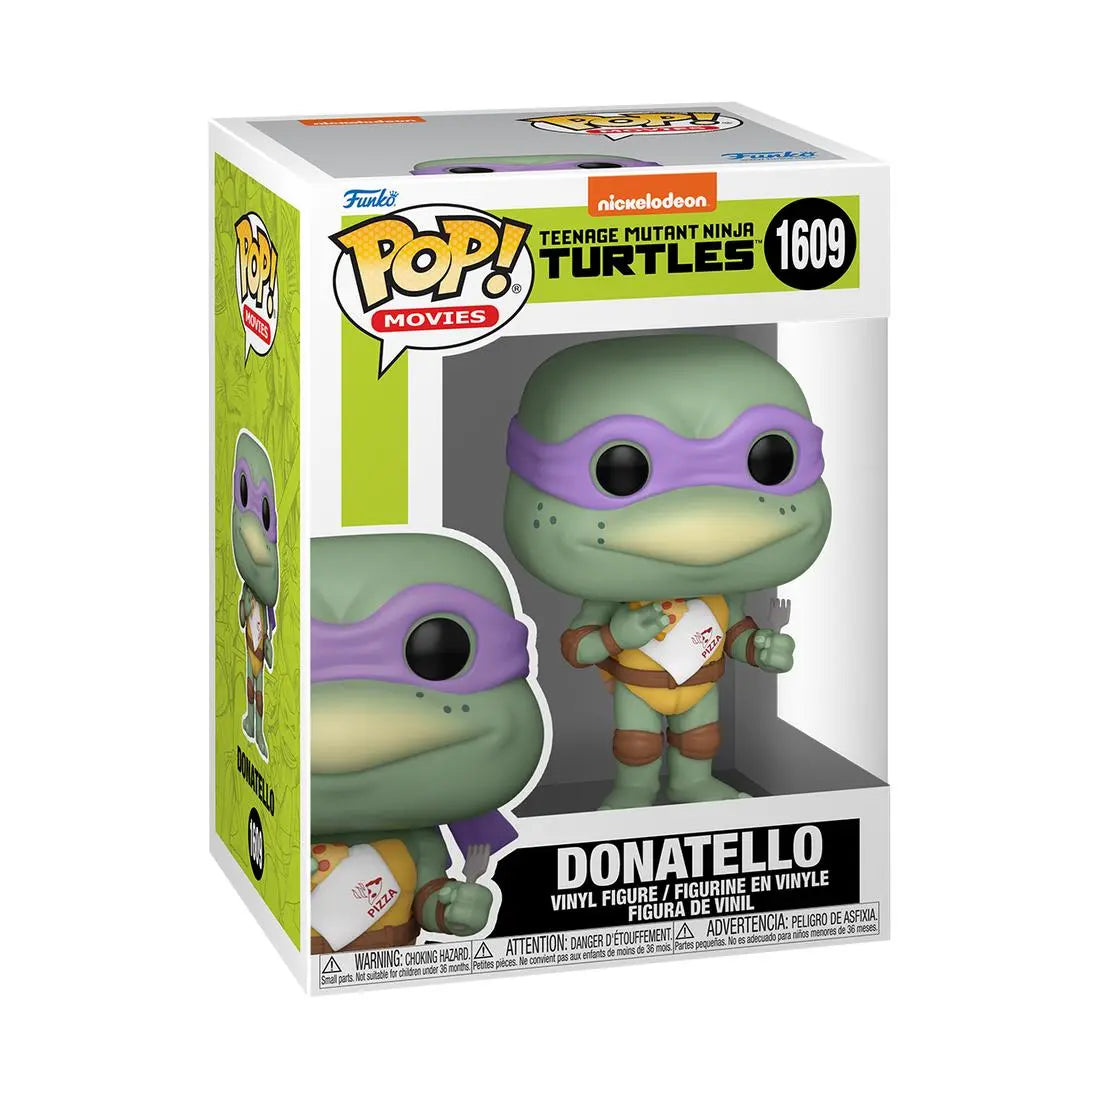 Funko Pop! Movies Teenage Mutant Ninja Turtles 1609 Donatello with Pizza Funko